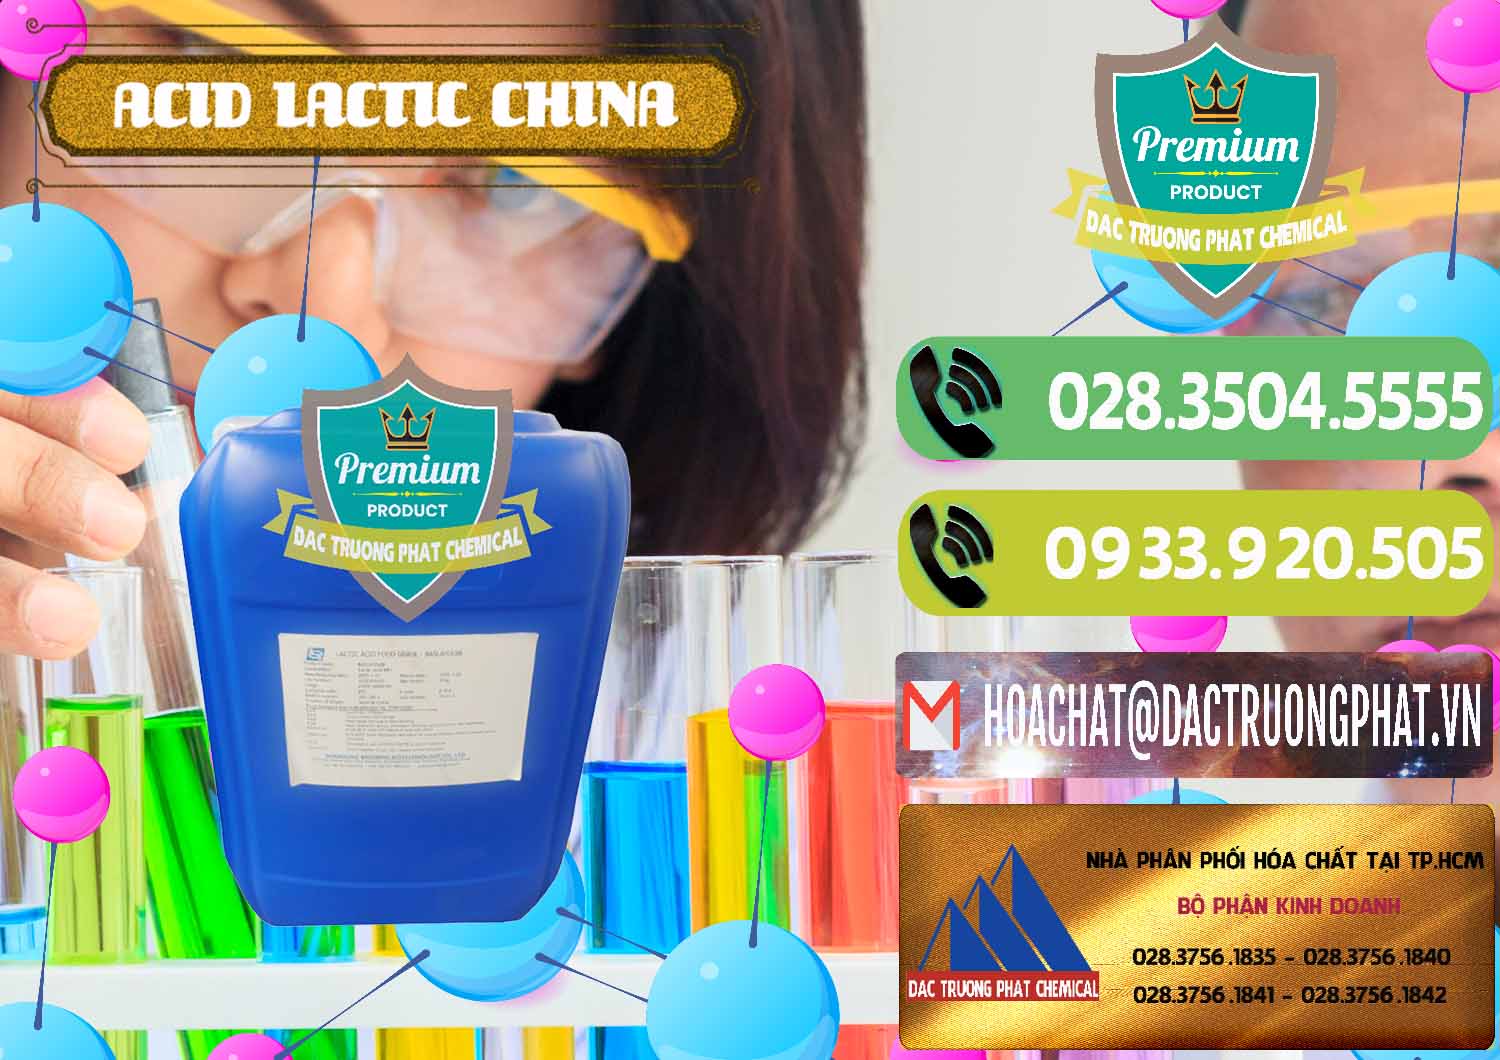 Cty chuyên bán ( phân phối ) Acid Lactic – Axit Lactic Trung Quốc China - 0374 - Nhà cung cấp & phân phối hóa chất tại TP.HCM - hoachatmientay.vn